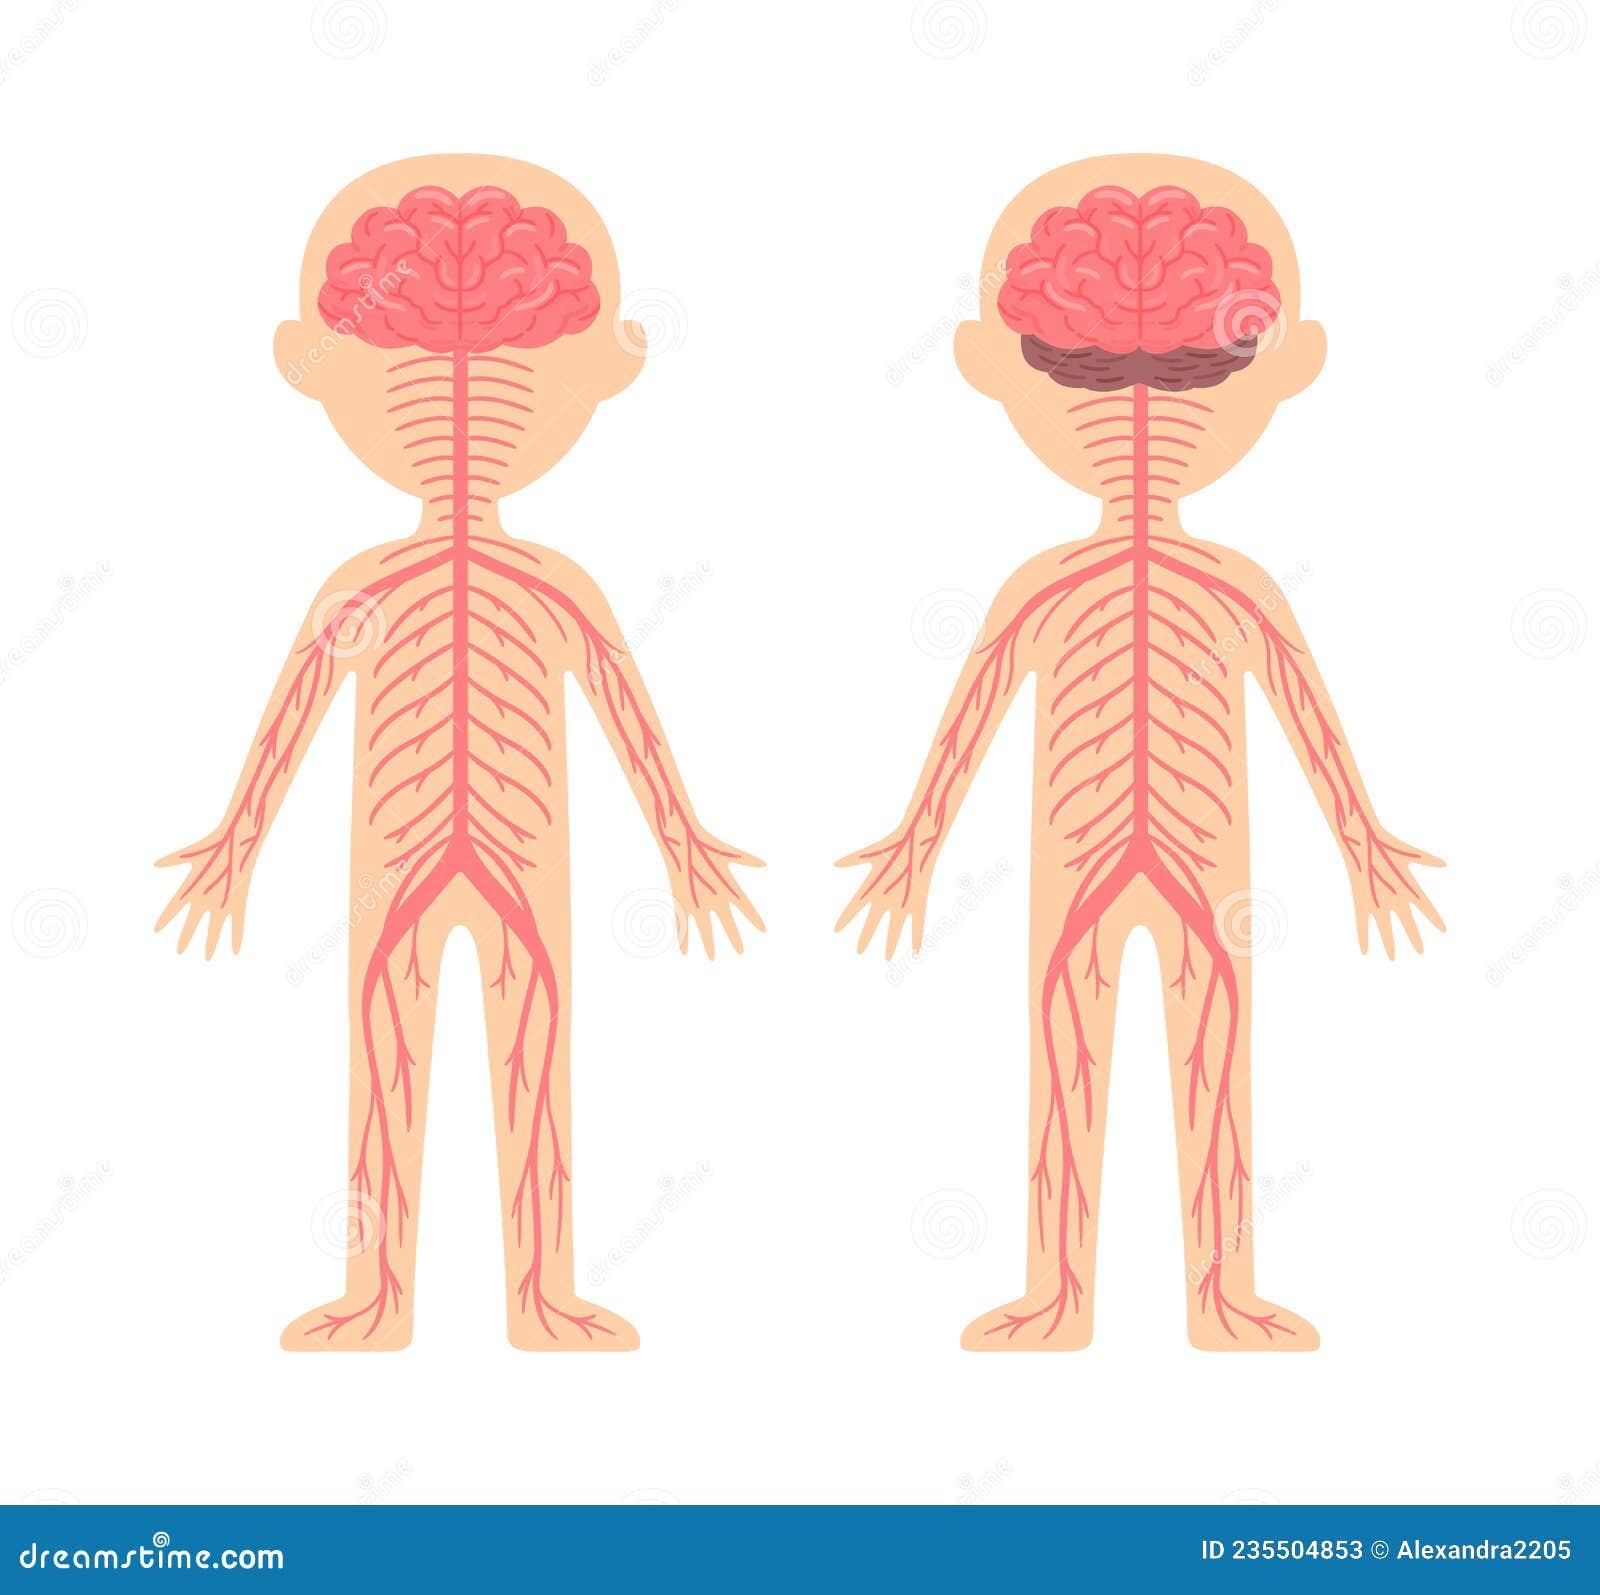 Sistema Nervioso Humano. Diagrama De Plantillas Para La Lección De Anatomía  Y Biología. Vista Frontal Y Posterior. Educación De Lo Ilustración del  Vector - Ilustración de lindo, blanco: 235504853